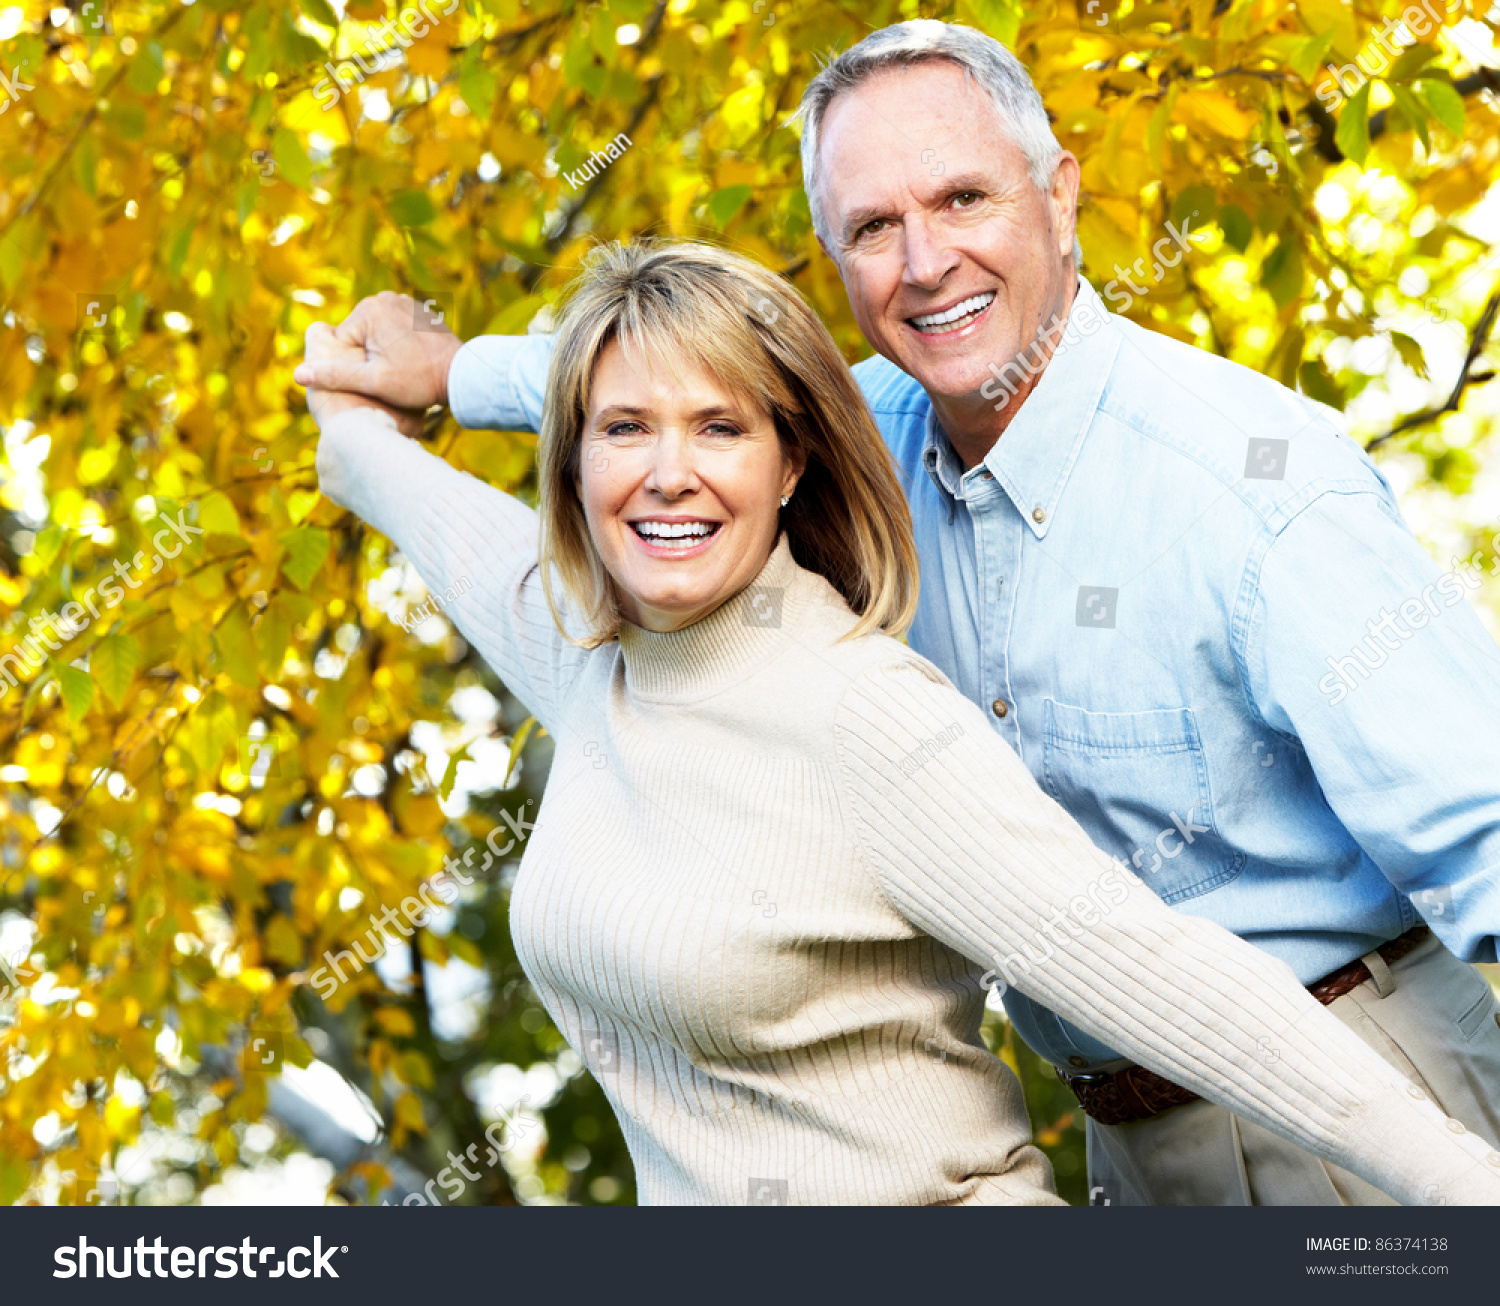 Мужчины после 75 лет. Люди зрелого возраста. Мужчина и женщина в возрасте. Счастливые люди в возрасте. Возраст человека.